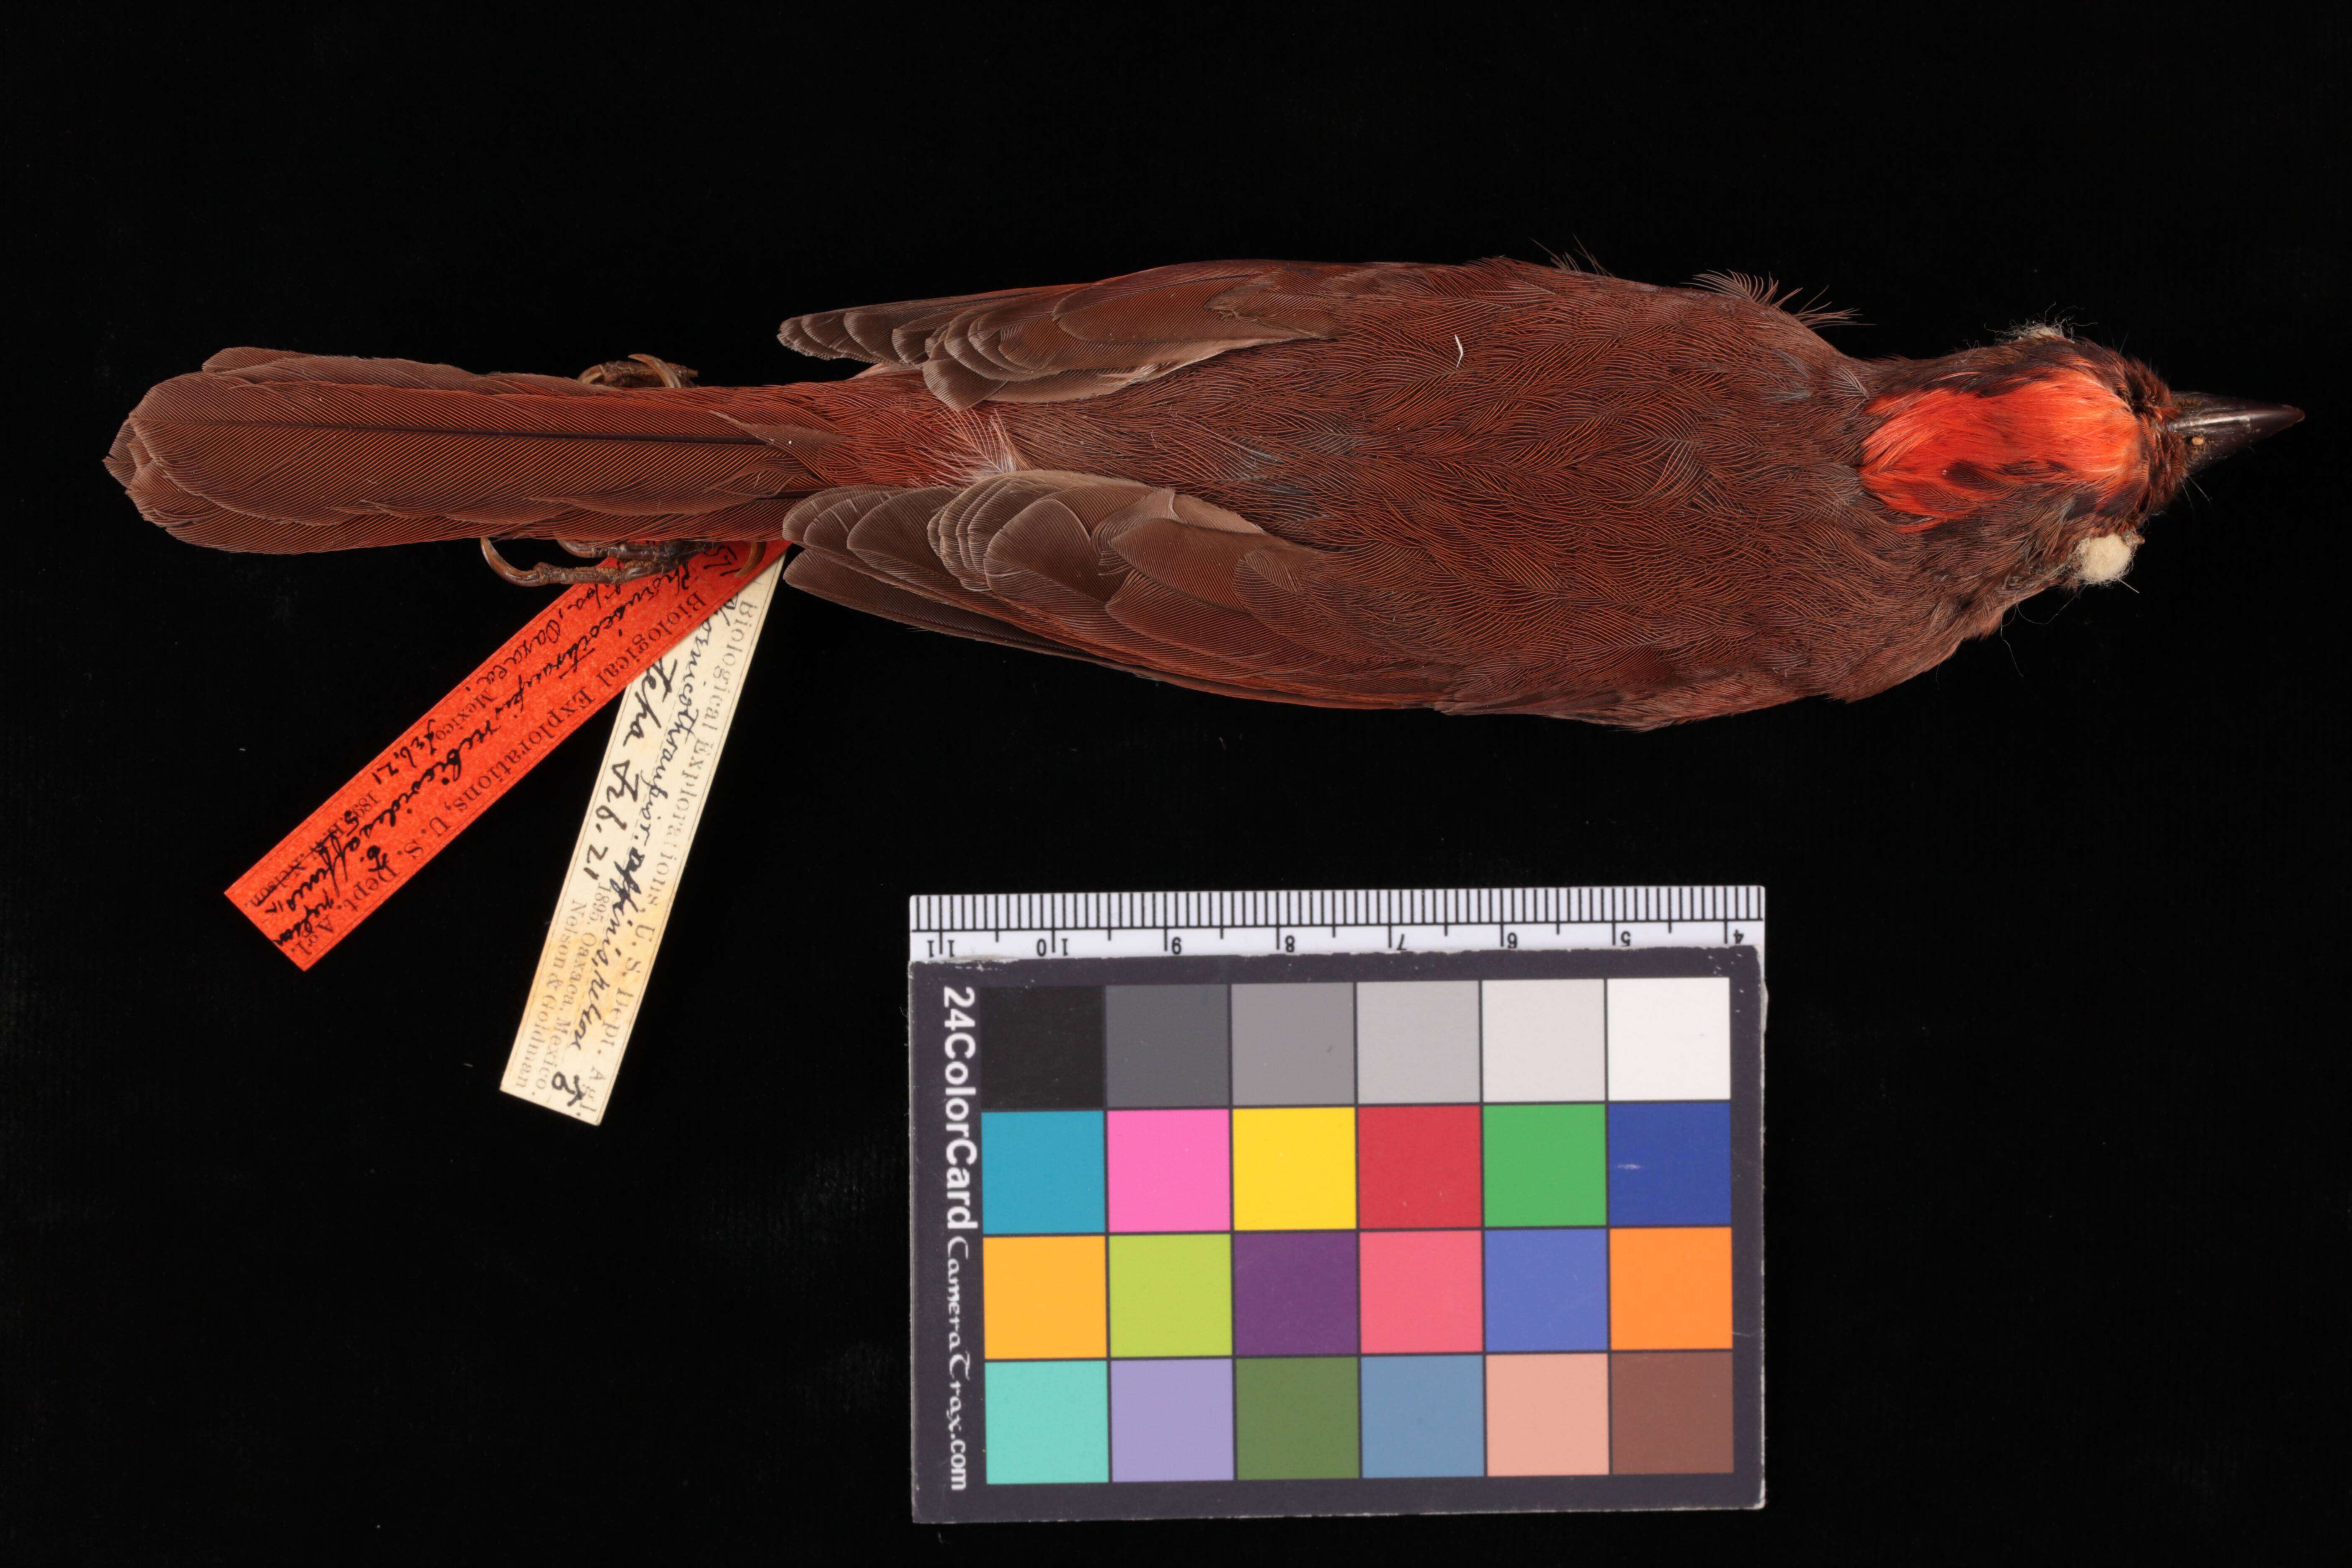 Sivun Habia rubica affinis (Nelson 1897) kuva